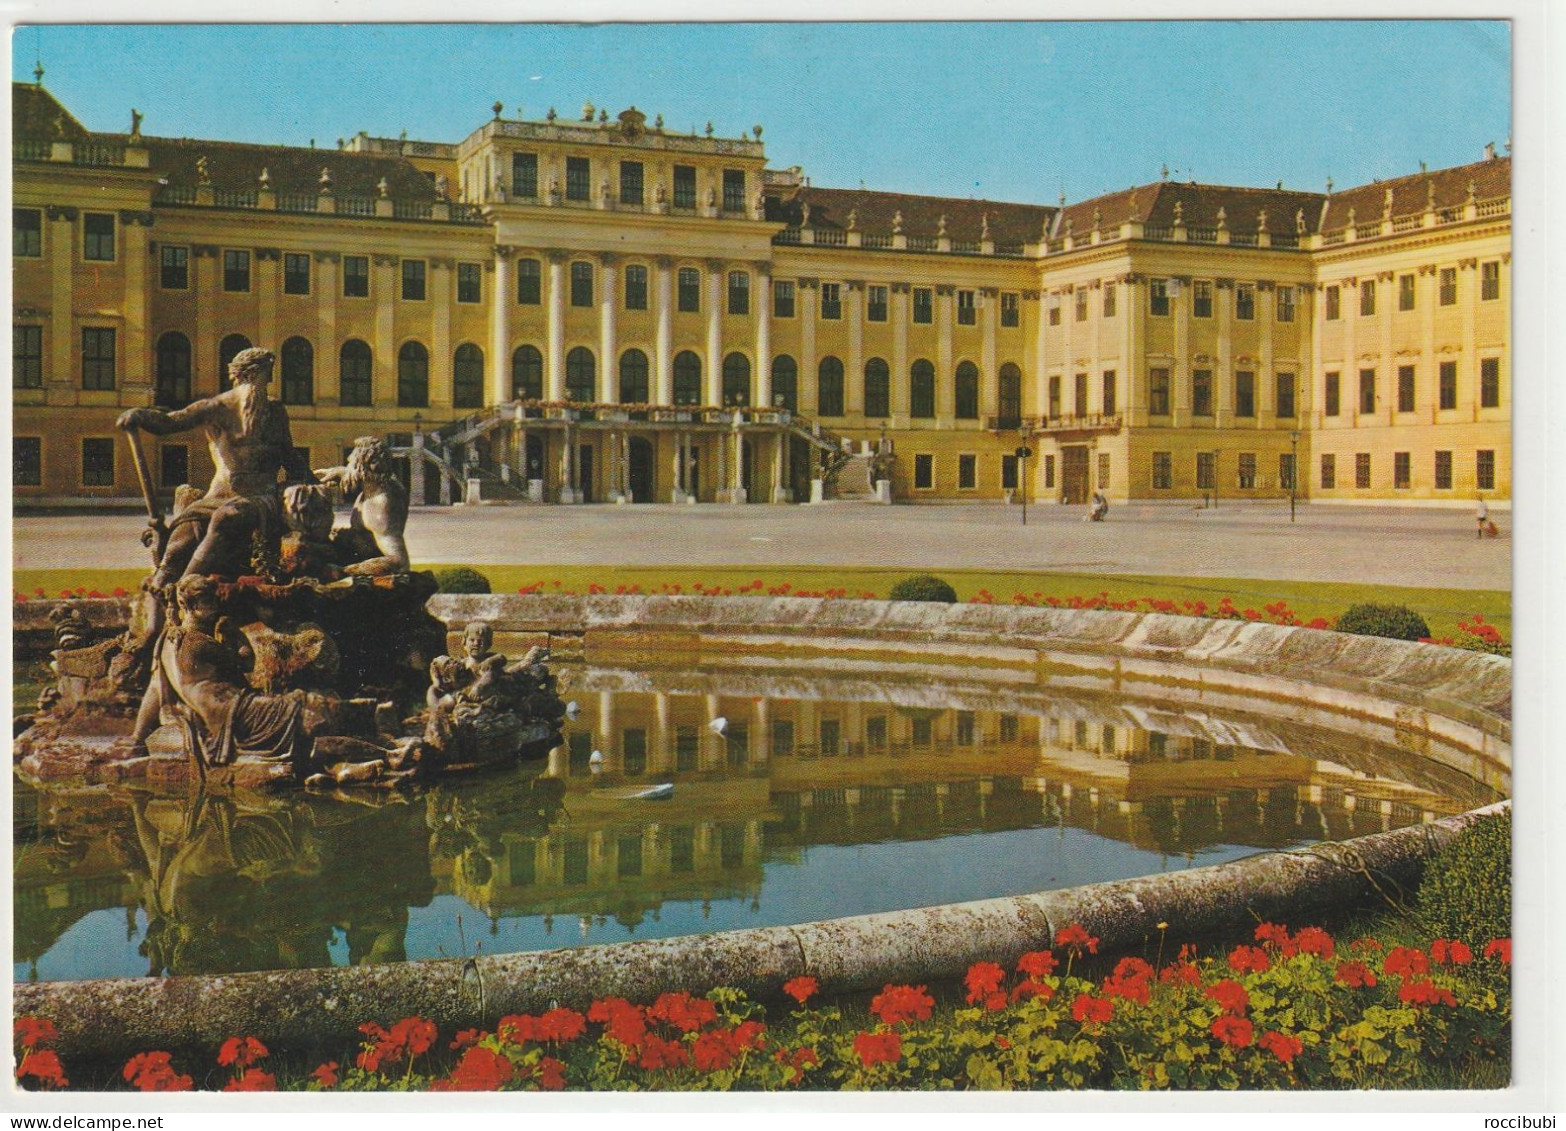 Wien, Schloss Schönbrunn, Österreich - Schönbrunn Palace